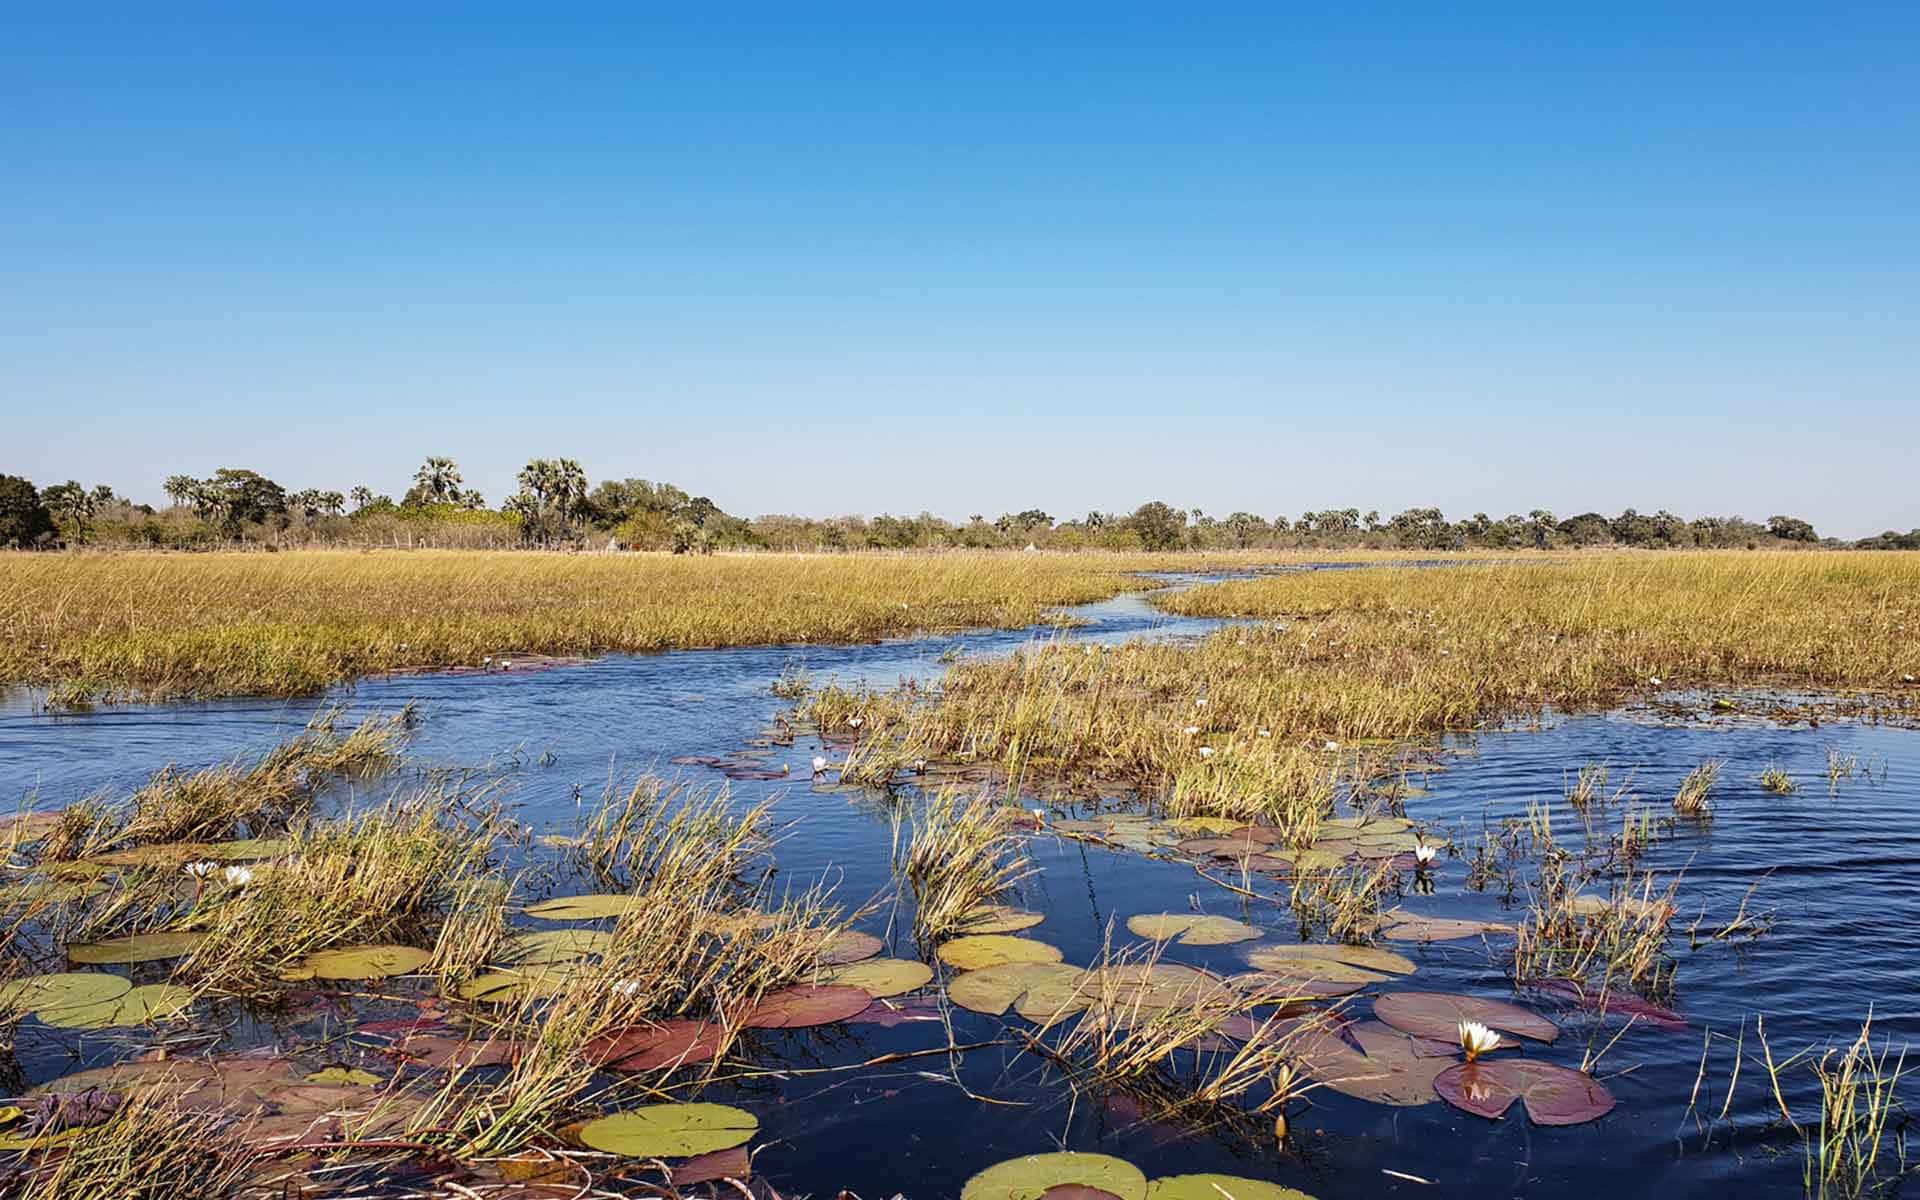 Grundavatten I Okavangodeltat. Wallpaper